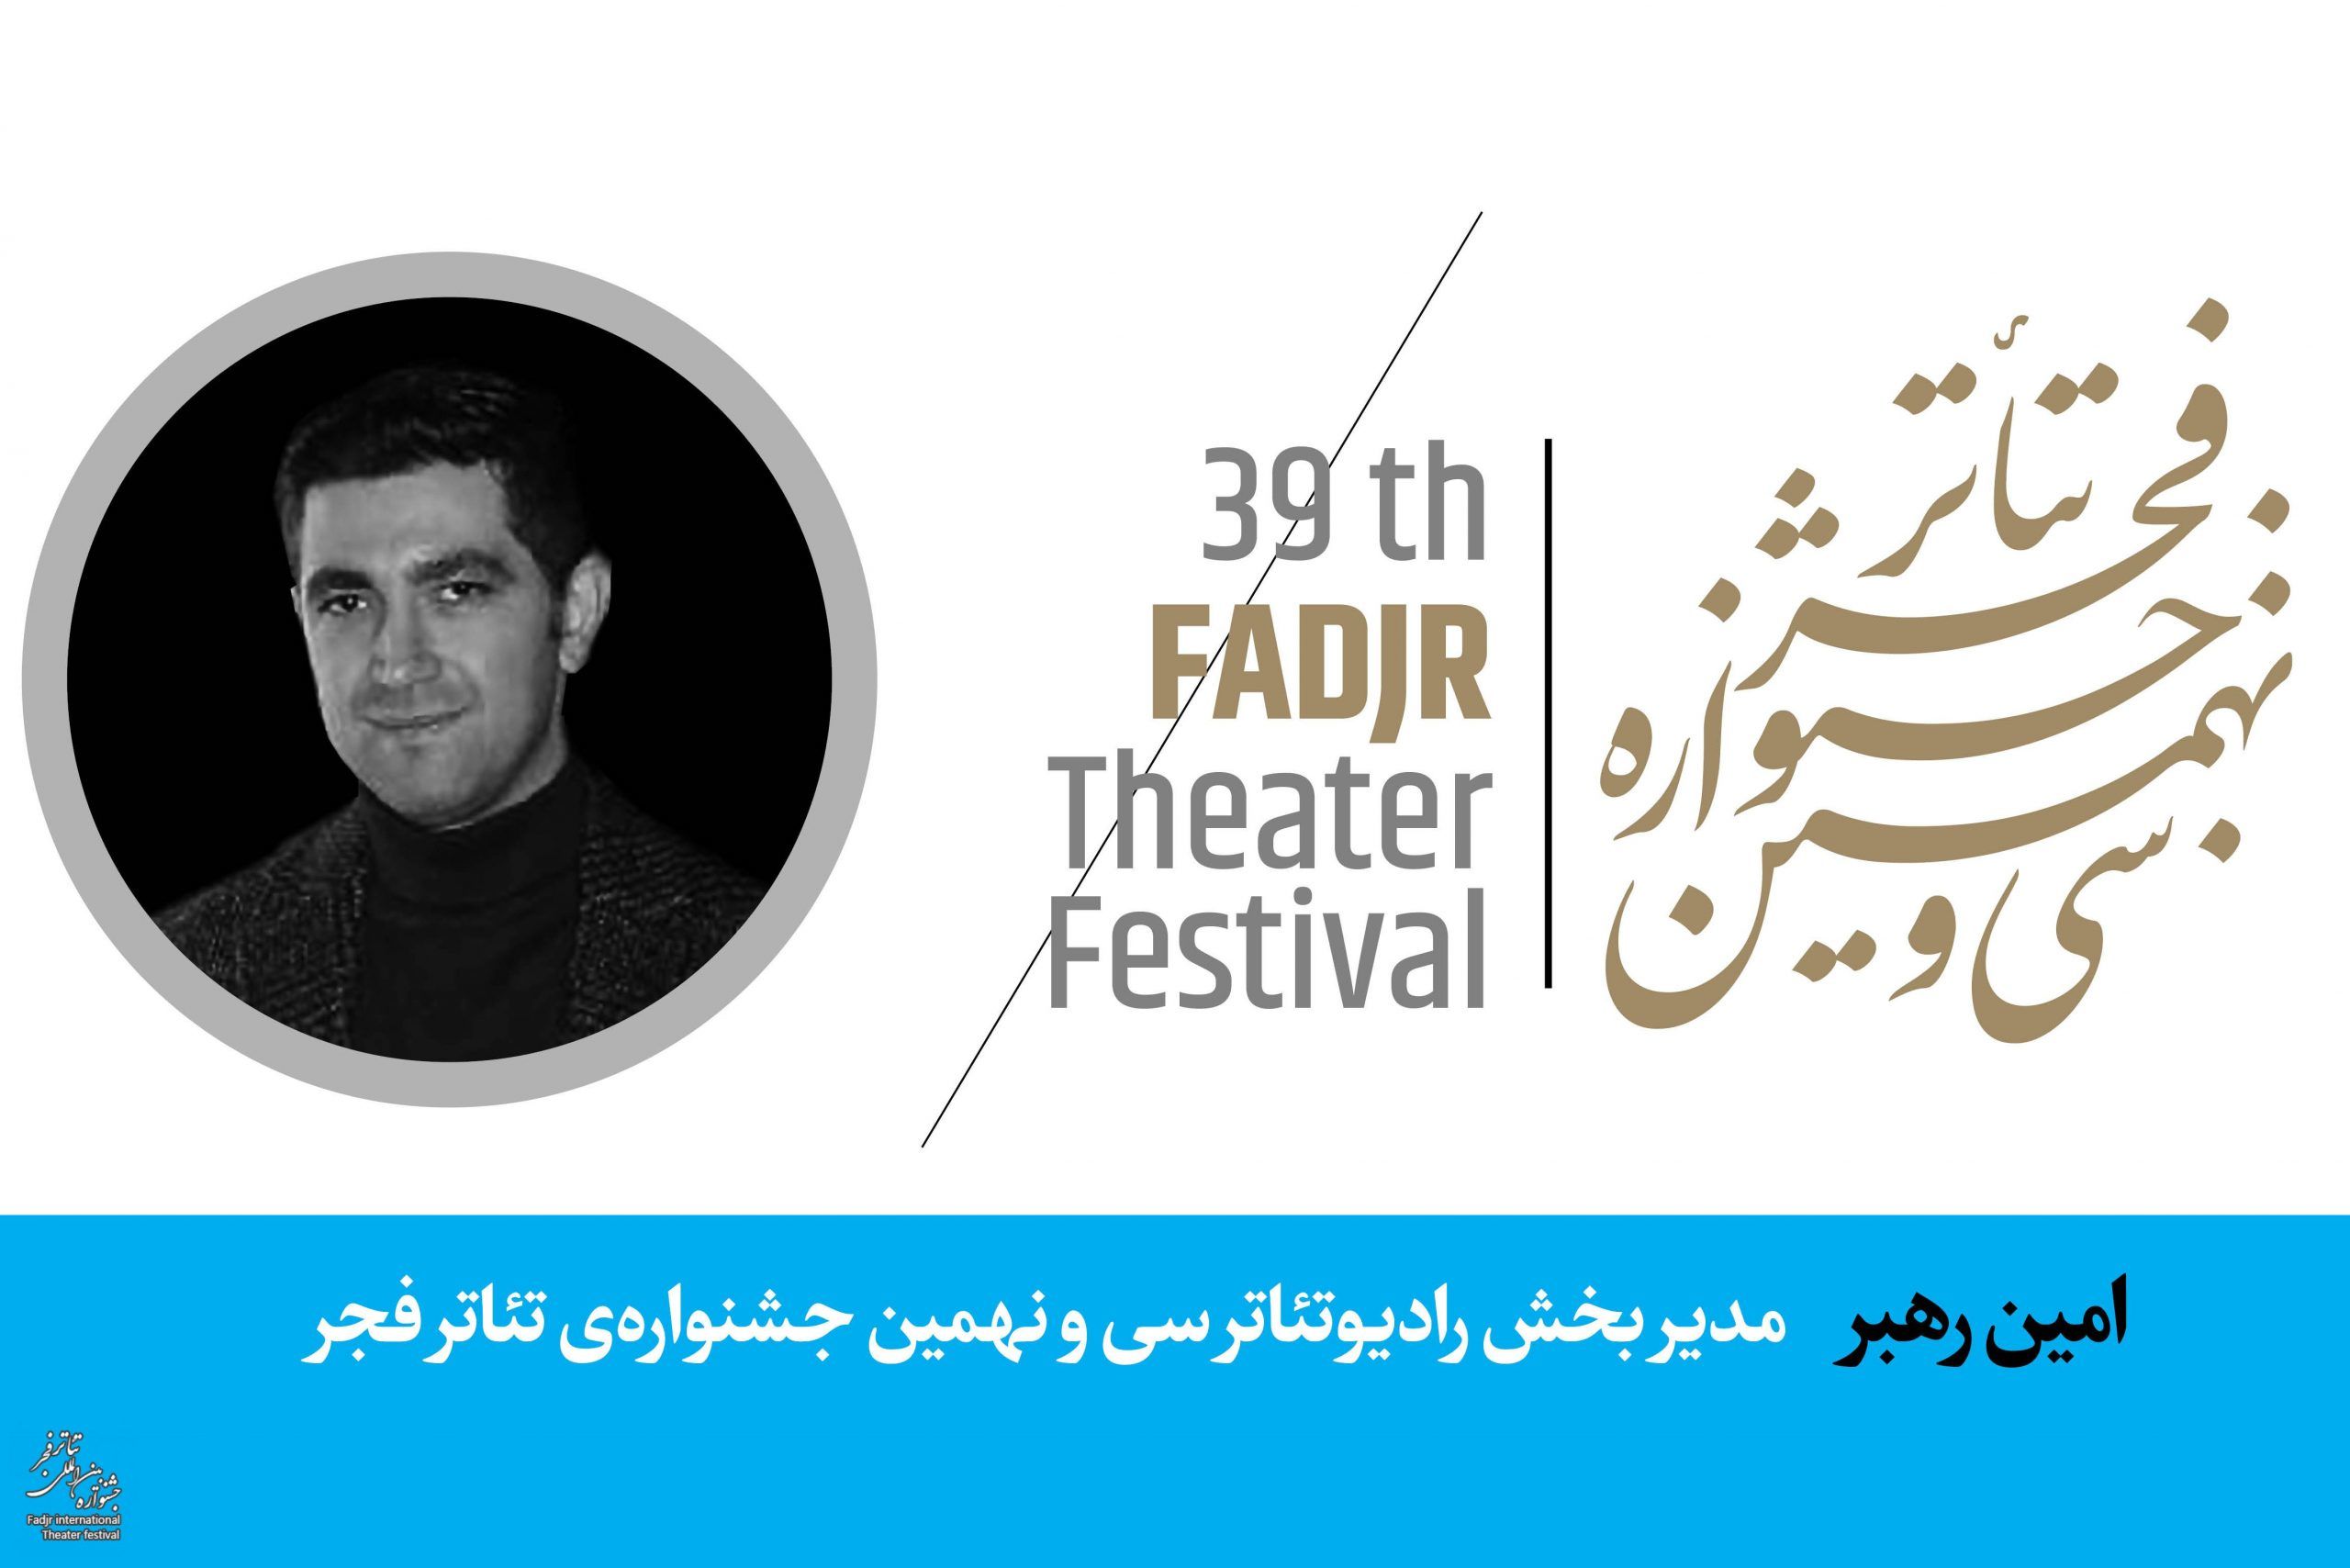 جزئیات نحوه برگزاری بخش رادیو تئاتر جشنواره فجر اعلام شد